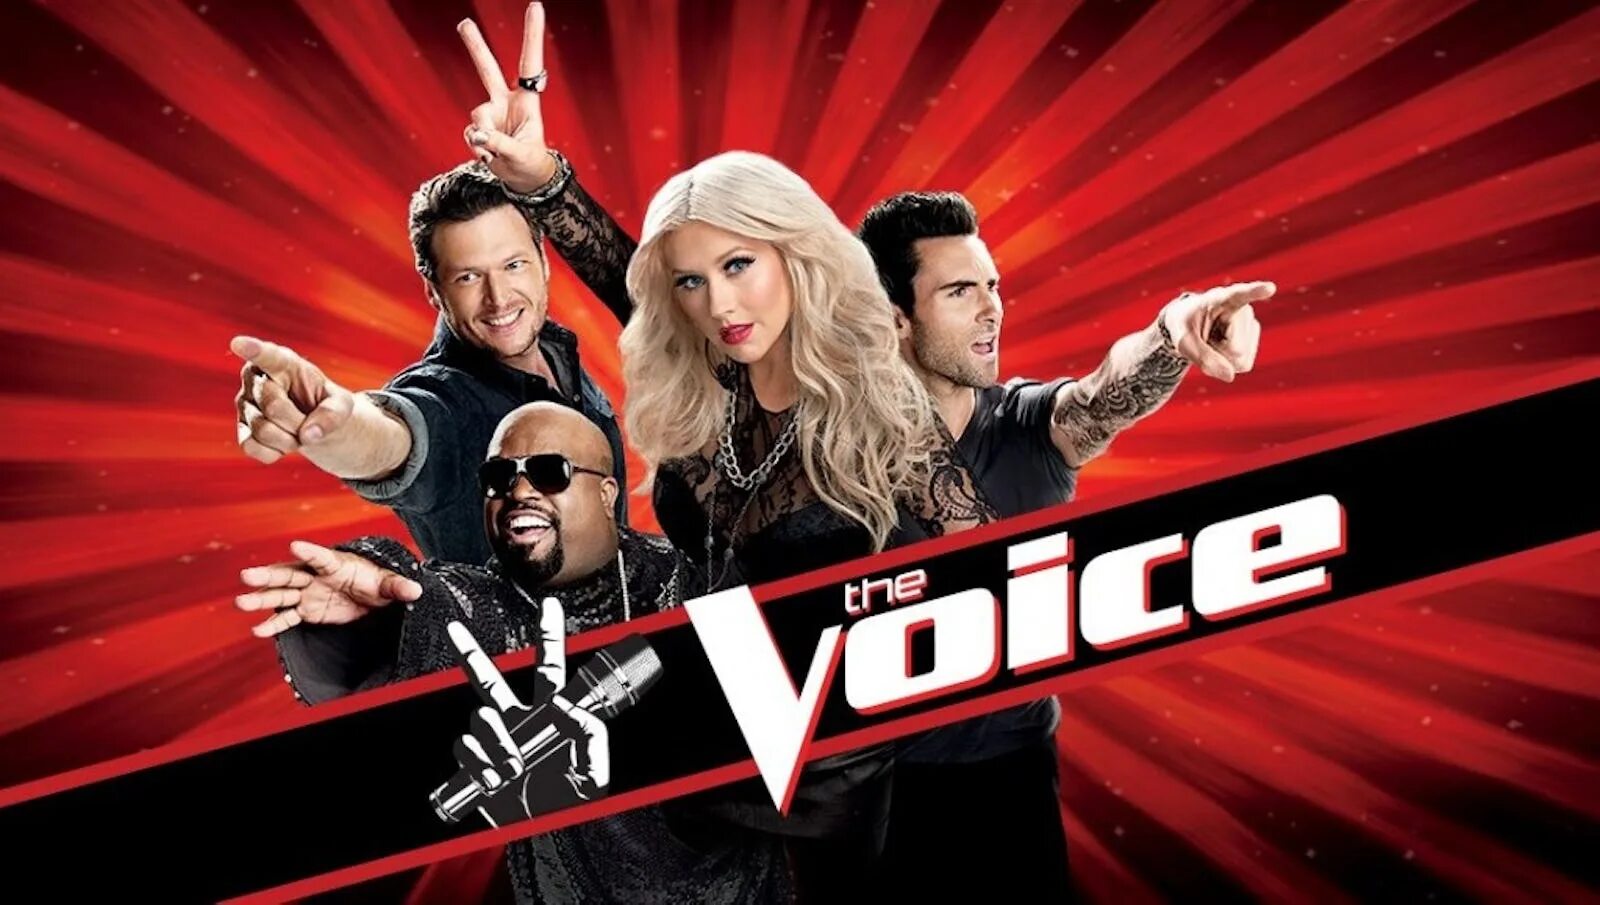 The Voices. Шоу Voice. Voice TV. Voice телепередача. Voice 1.19 2